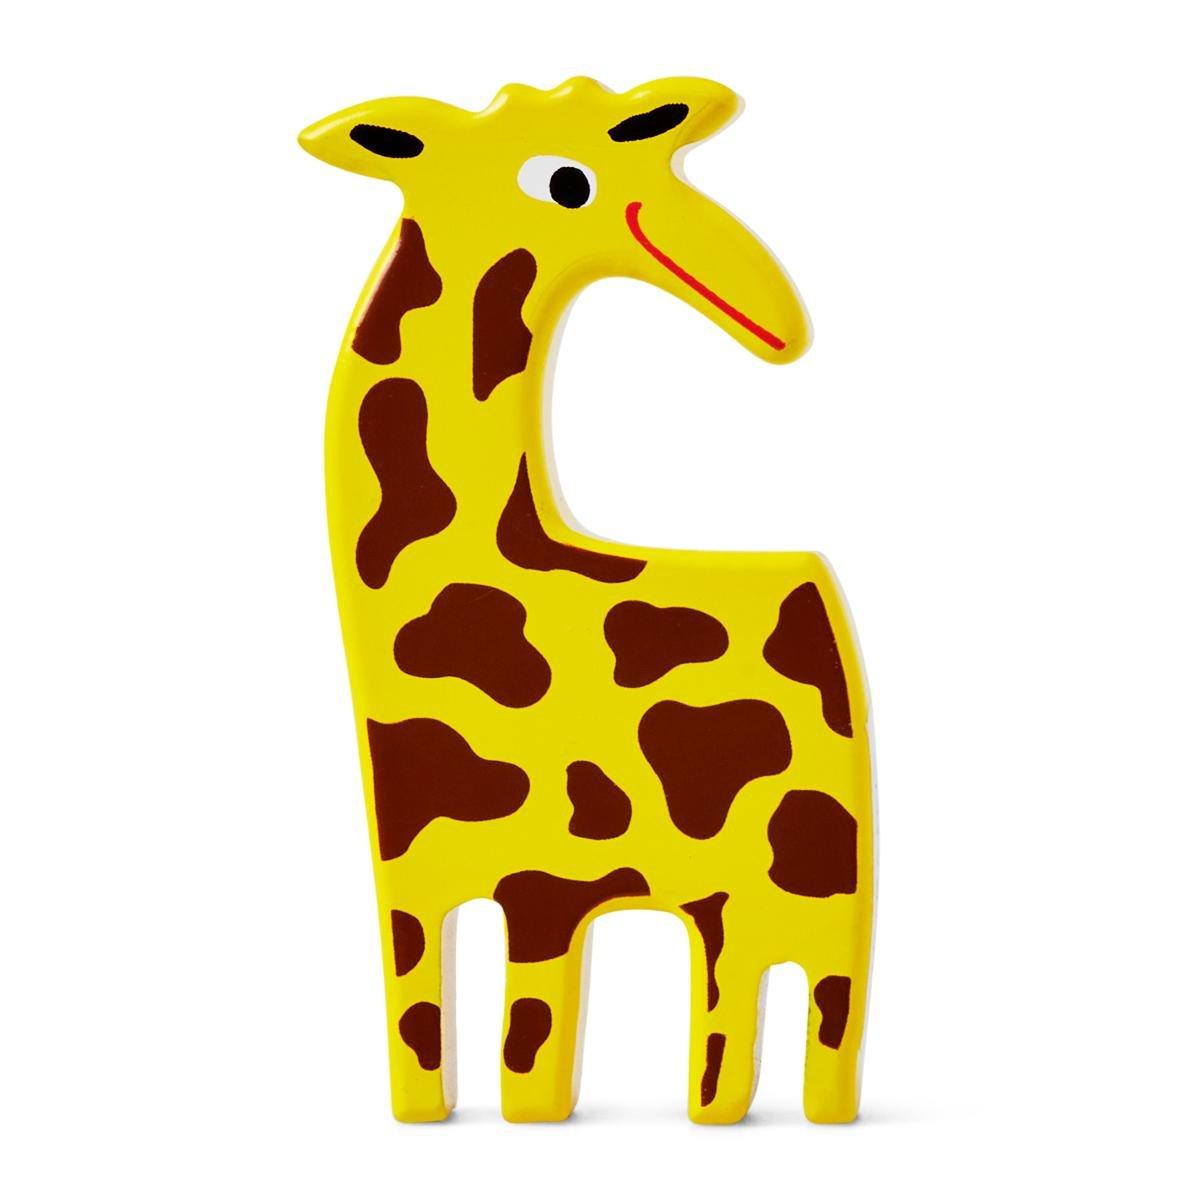 Yellow giraffe wooden animal